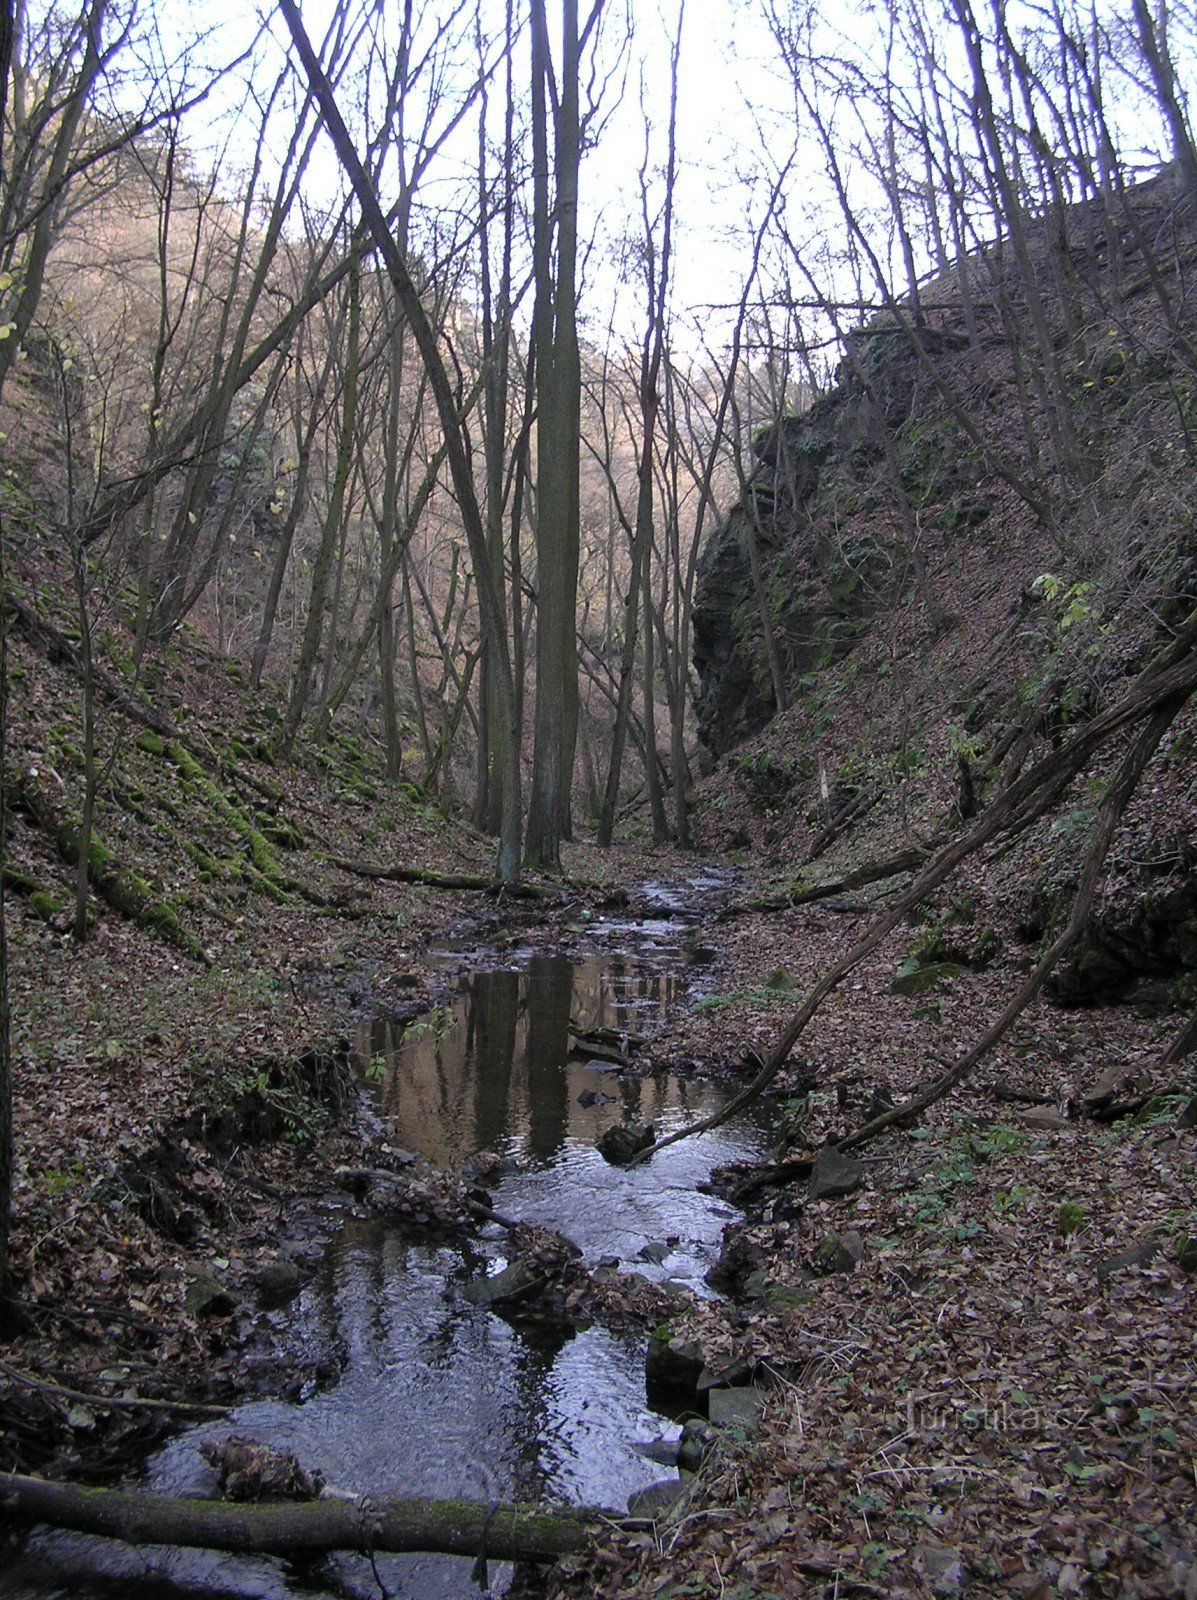 Mohelnička - nature reserve